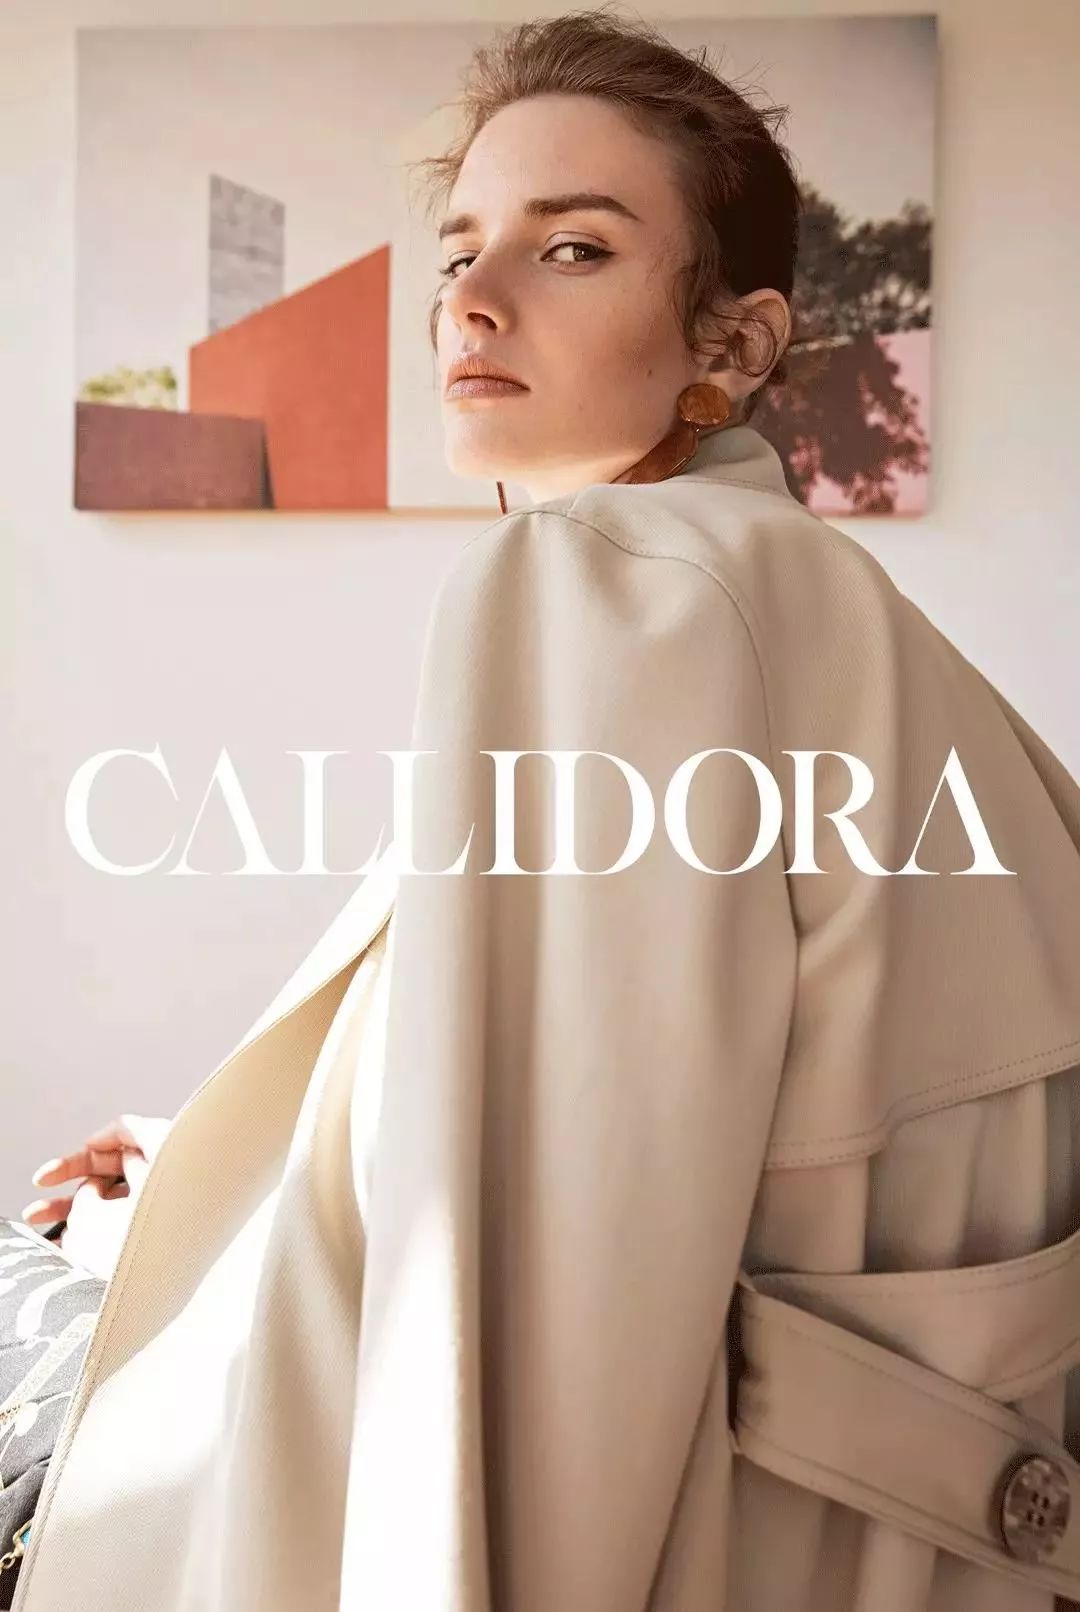 具有法国风格的高端女装品牌callidora卡莉朵拉哈尔滨卓展购物中心